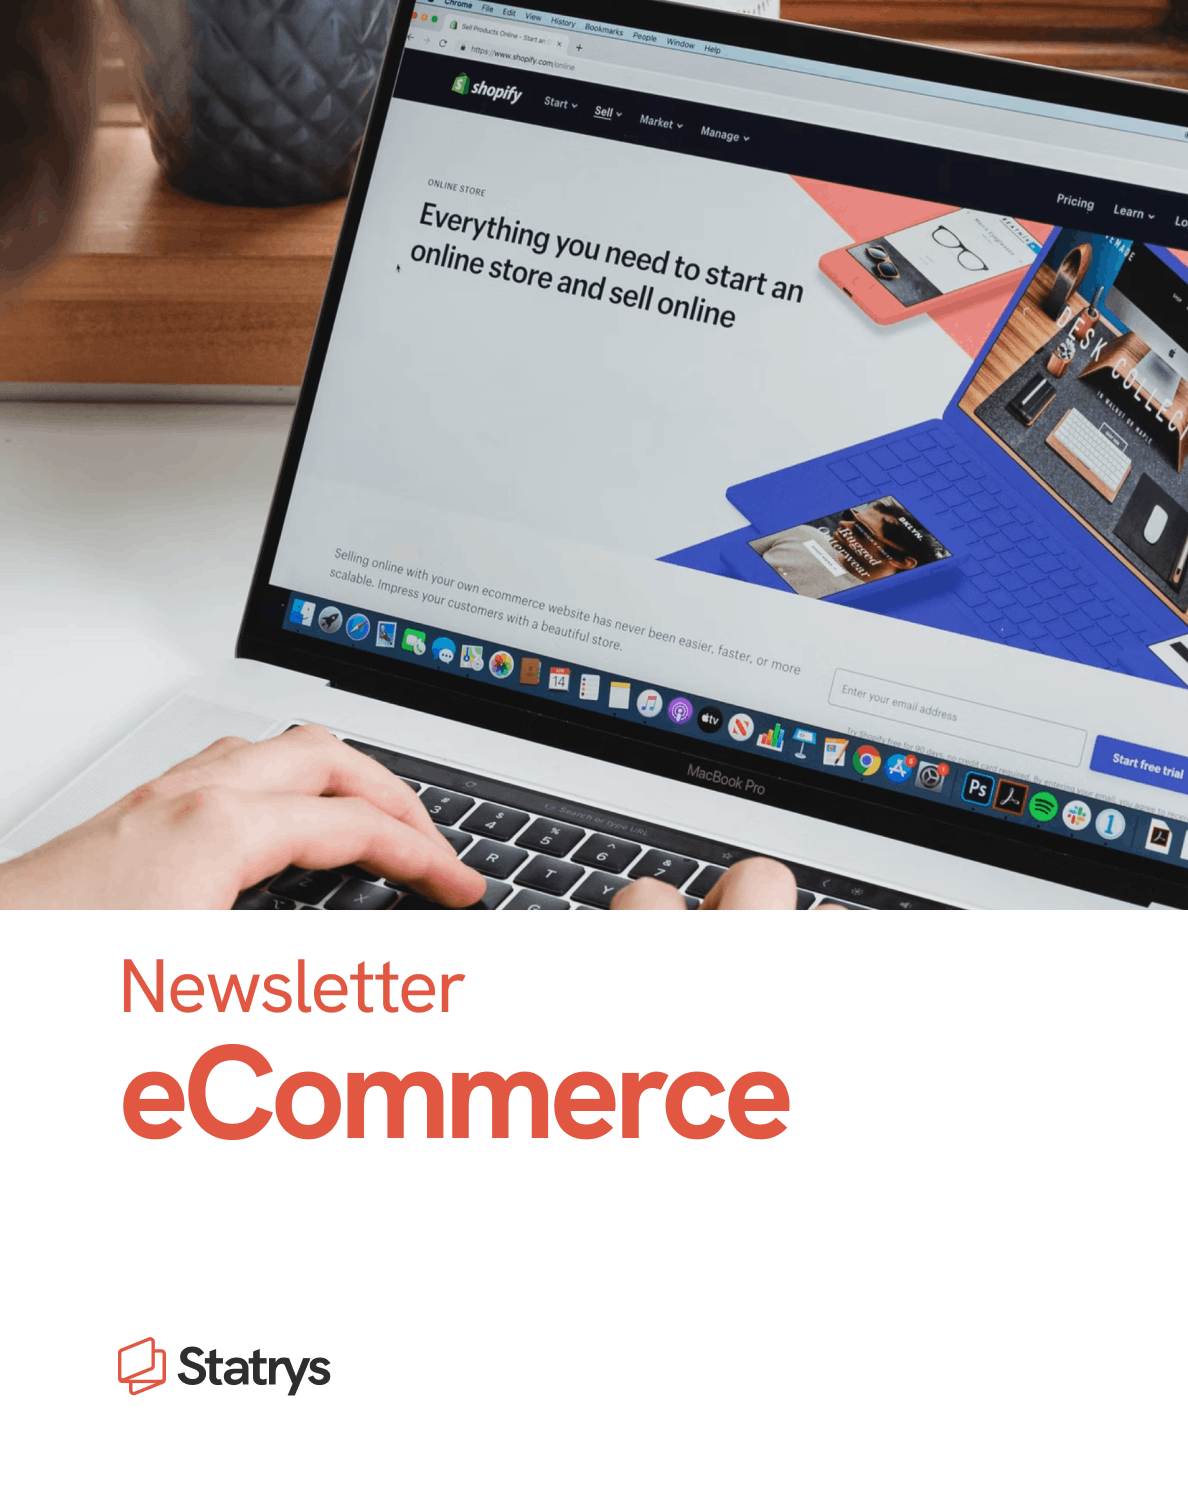 eCommerce newsletter